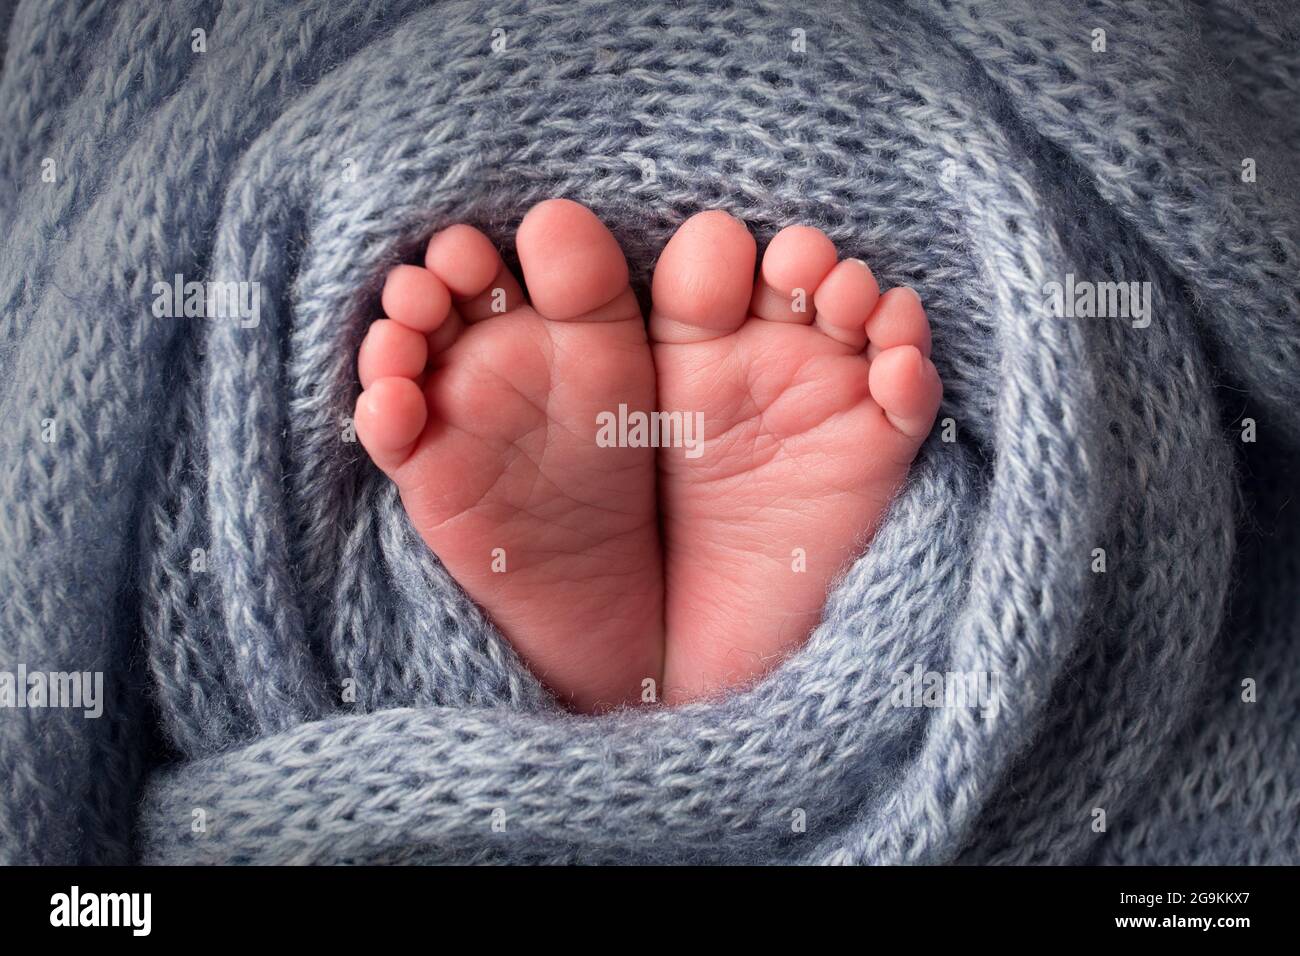 Los pies del bebé en una manta de lana azul claro y suave. Dedos de los pies pequeños. Foto de stock